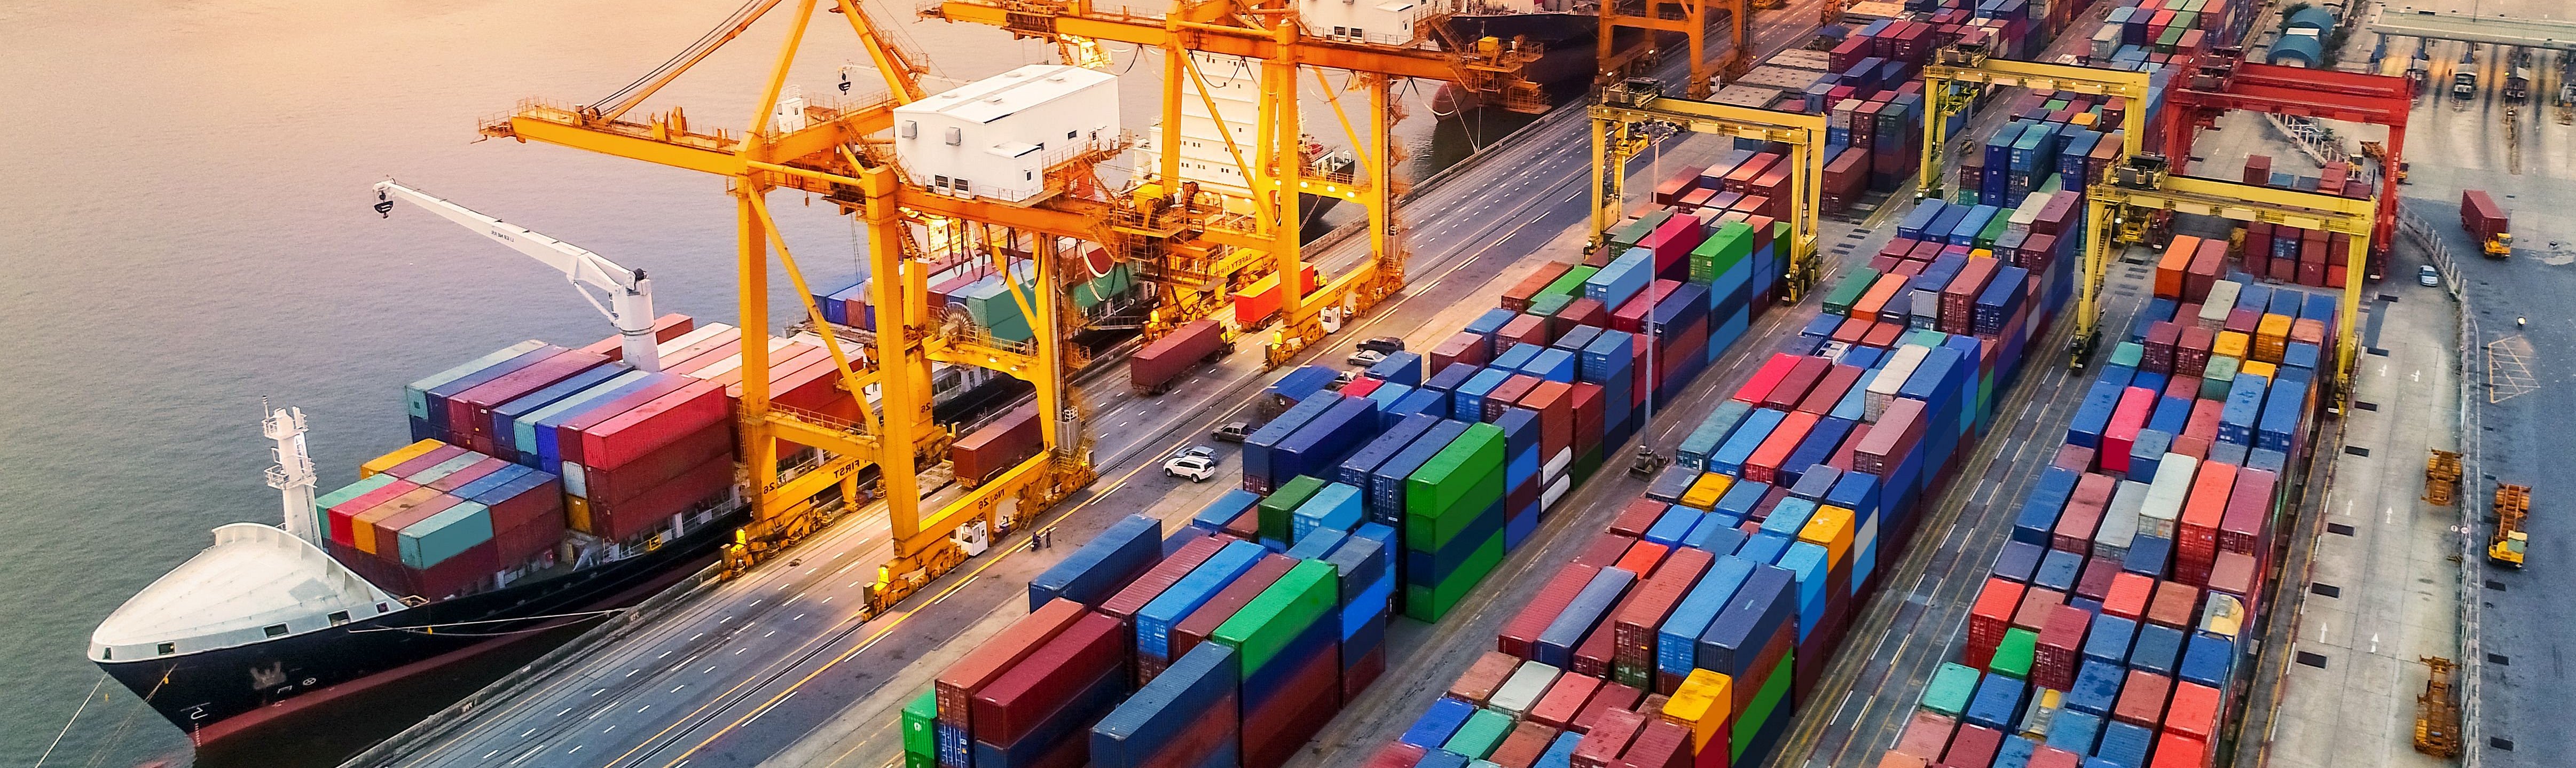 Containerhafen mit Schiff und LKWs soll Supply Chain Management visualisieren